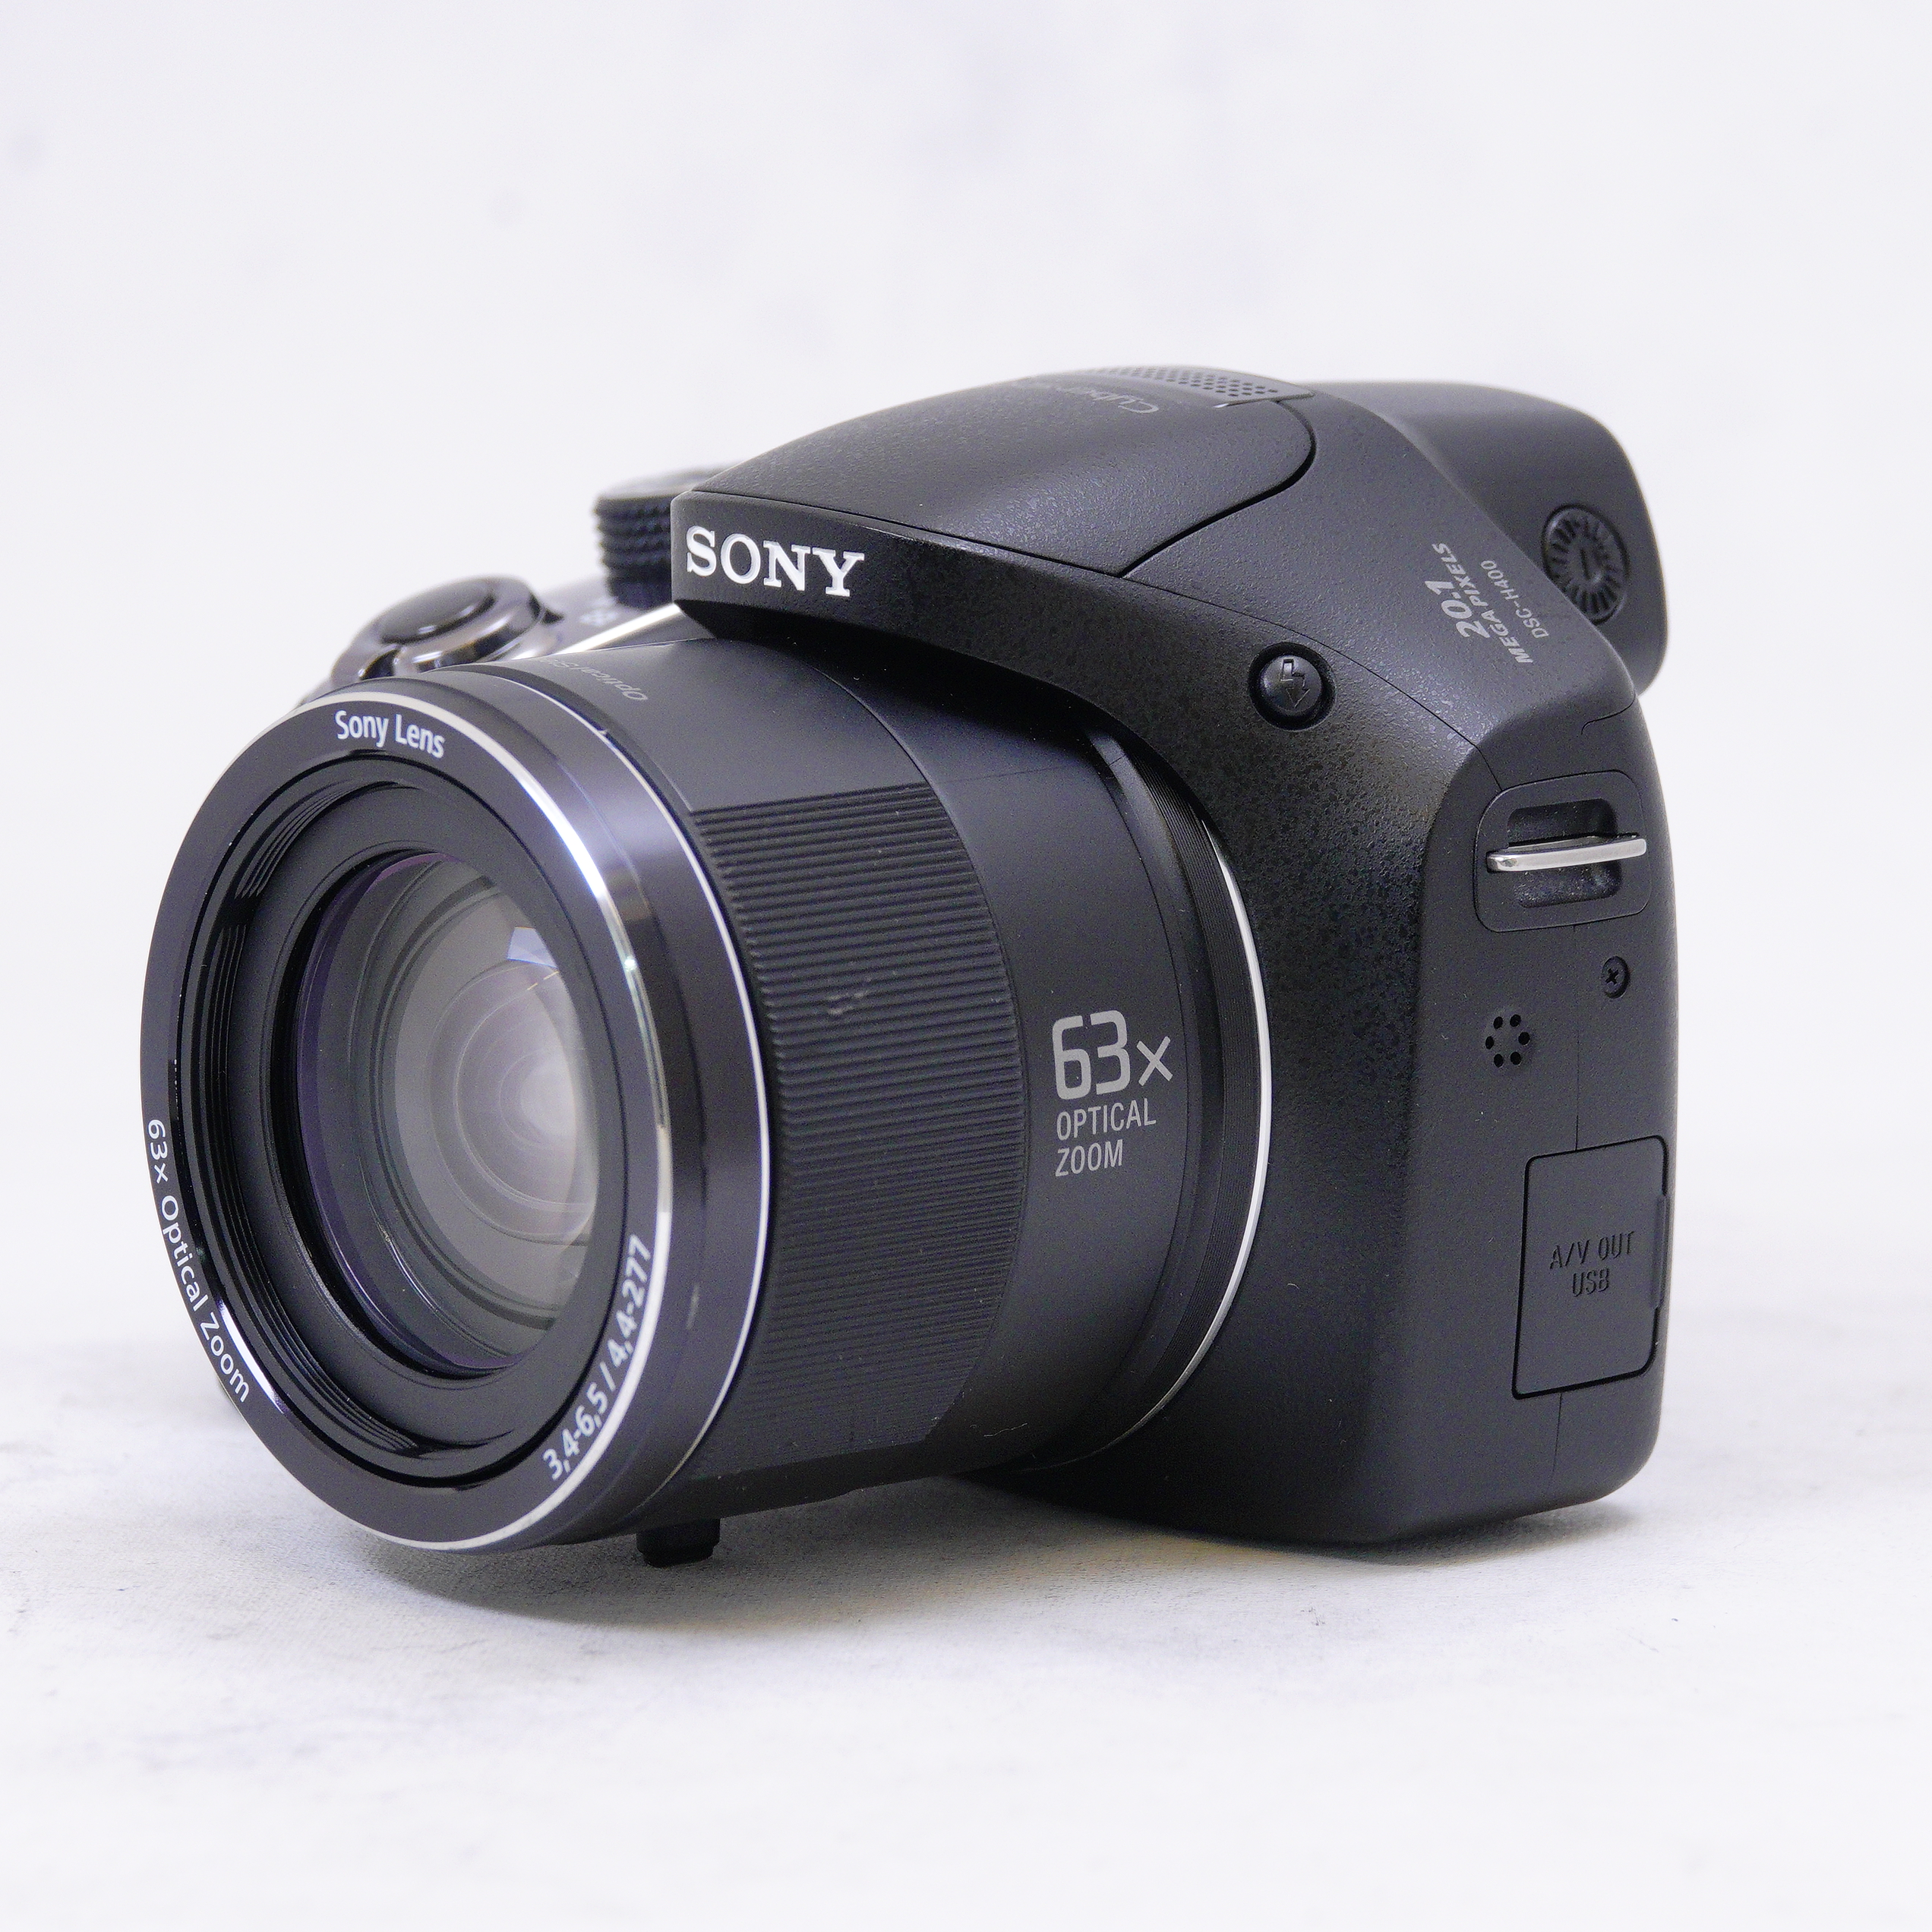 Sony Cámara compacta DSC-H400 con zoom óptico de 63x